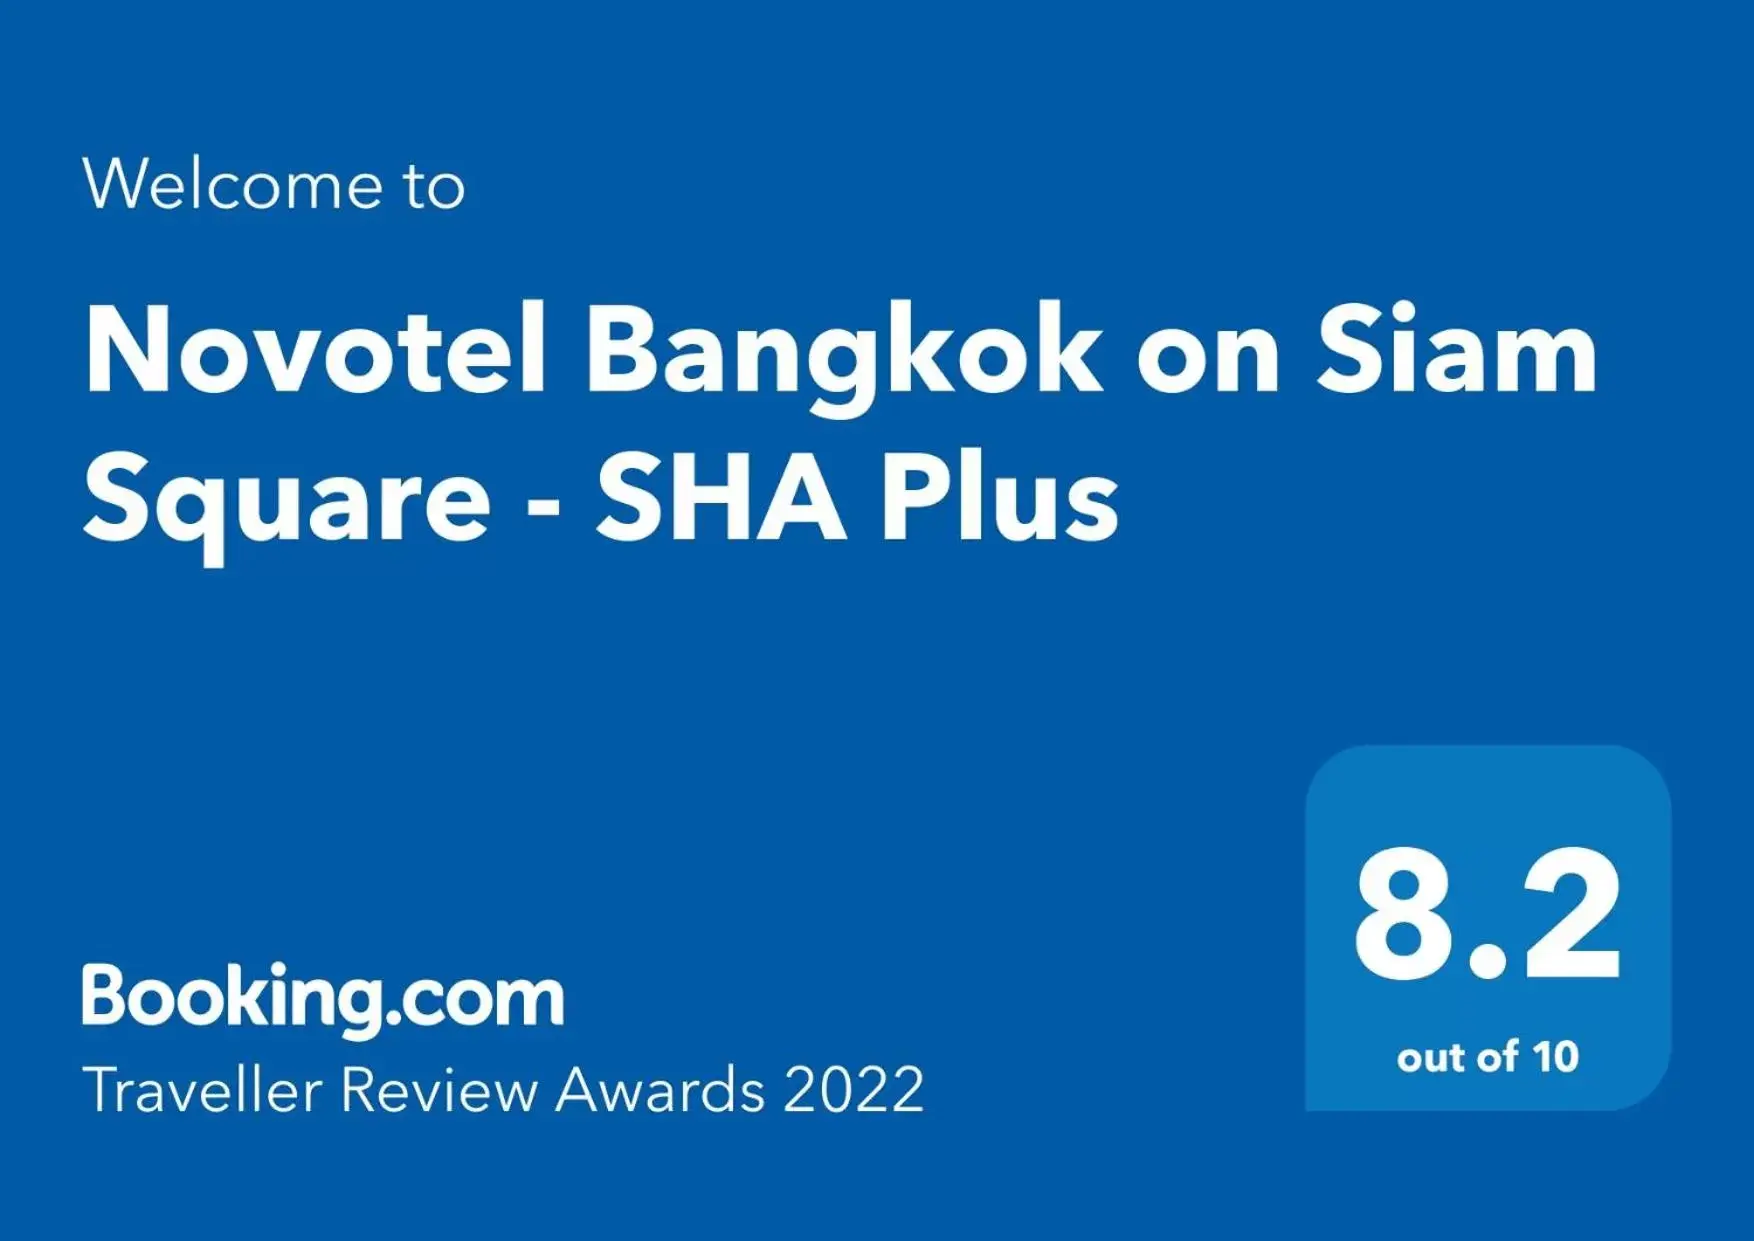 Certificate/Award, Logo/Certificate/Sign/Award in Novotel Bangkok on Siam Square